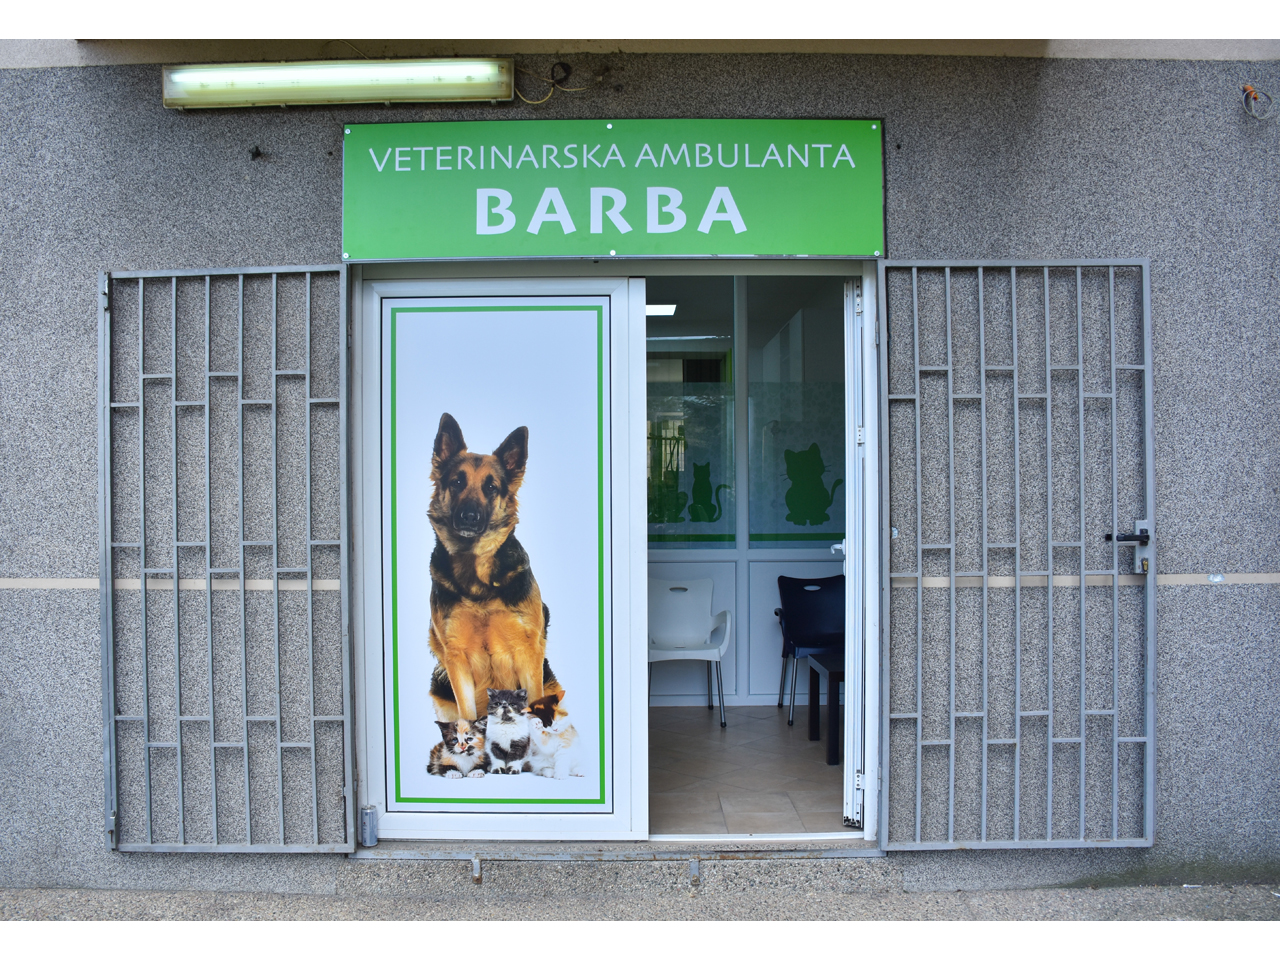 BARBA VETERINARSKA AMBULANTA Veterinarske ordinacije, veterinari Beograd - Slika 1